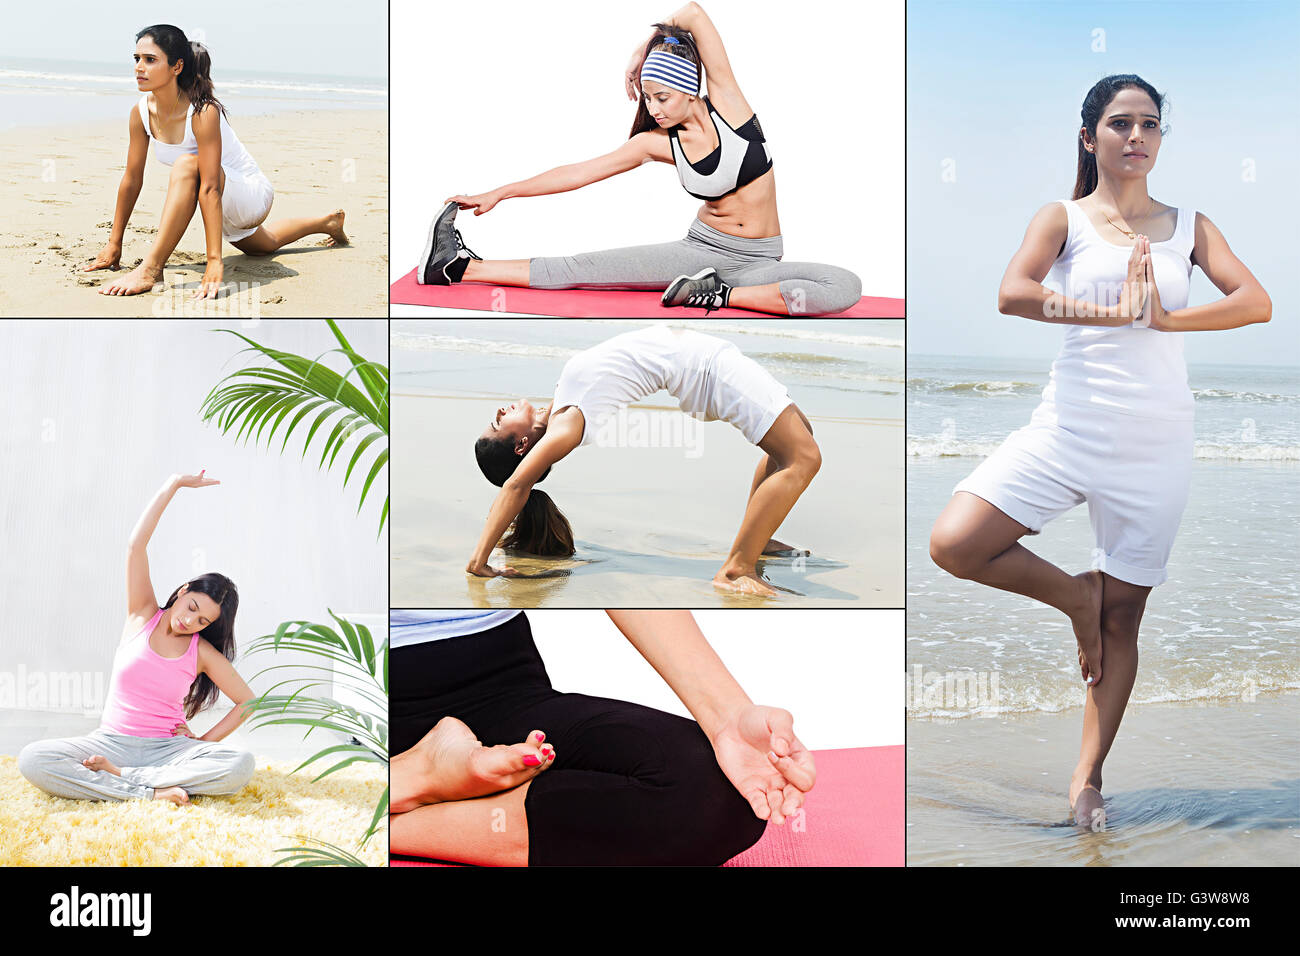 L'exercice des groupes de remise en forme numérique ou montage des foules qui s'étend en pratique les femmes seulement faire de yoga Banque D'Images